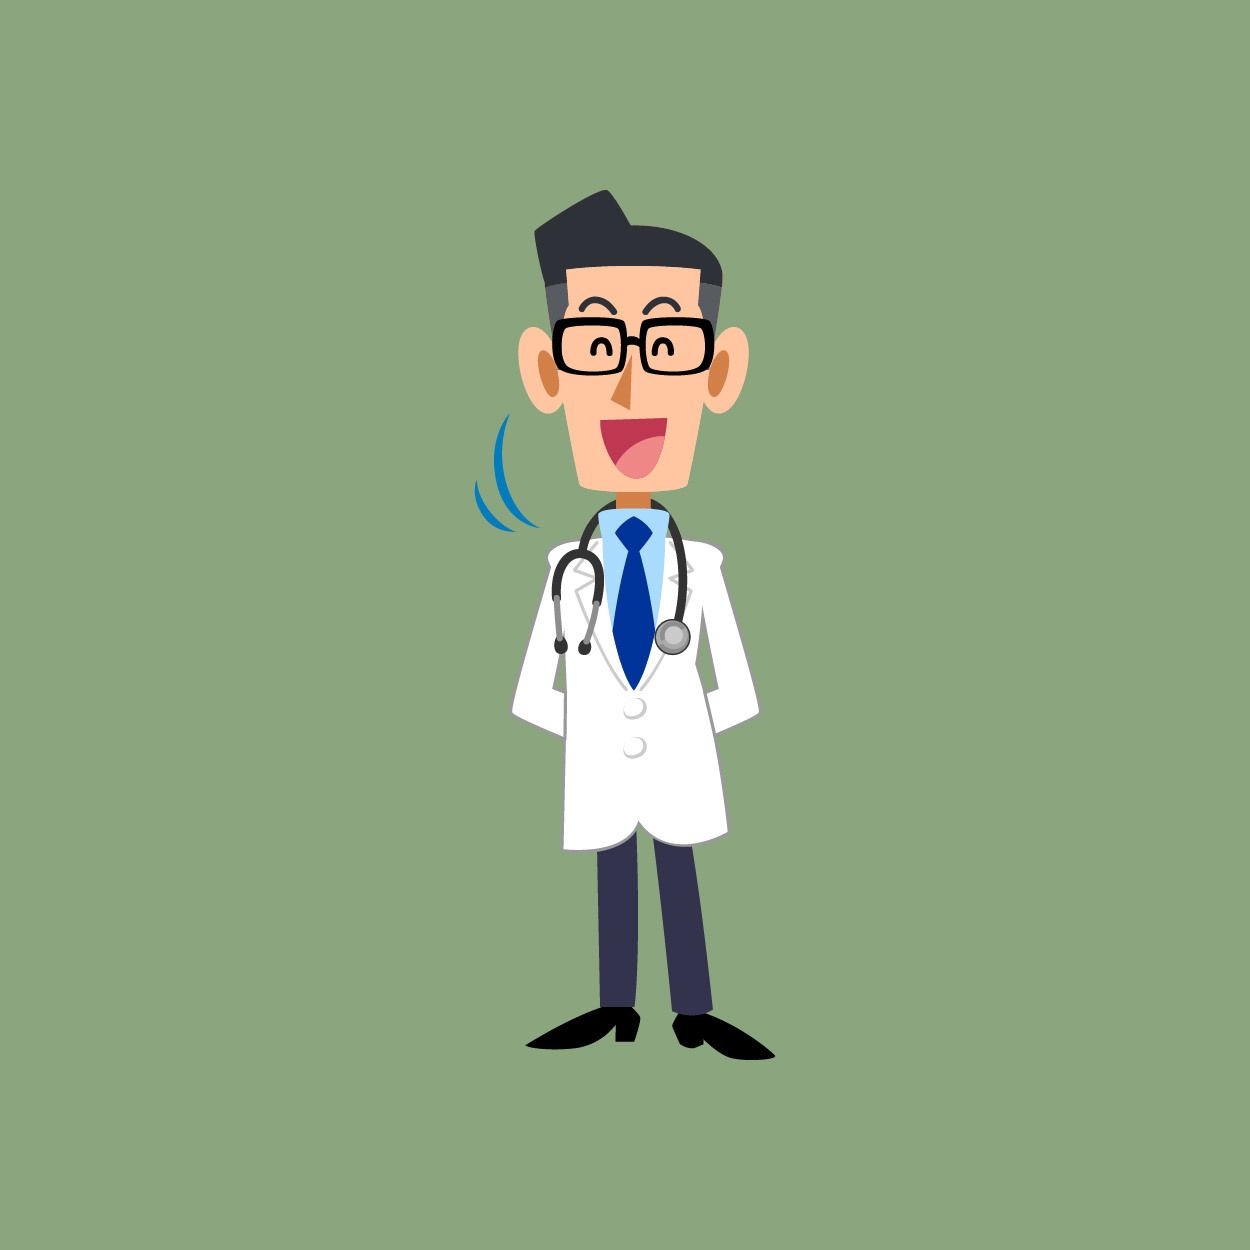 Personaje de dibujos animados de profesión médico sonriente